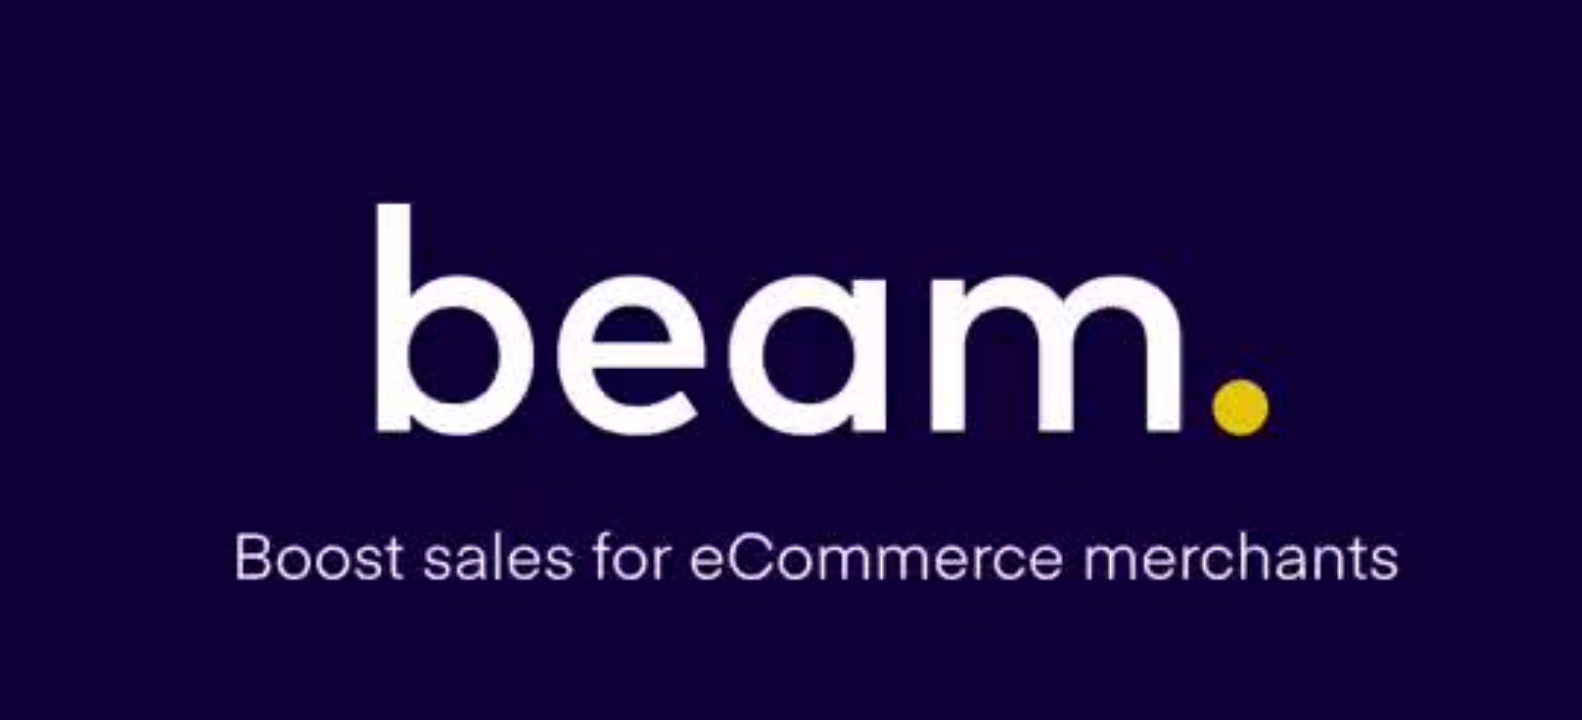 Beam Commerce logo